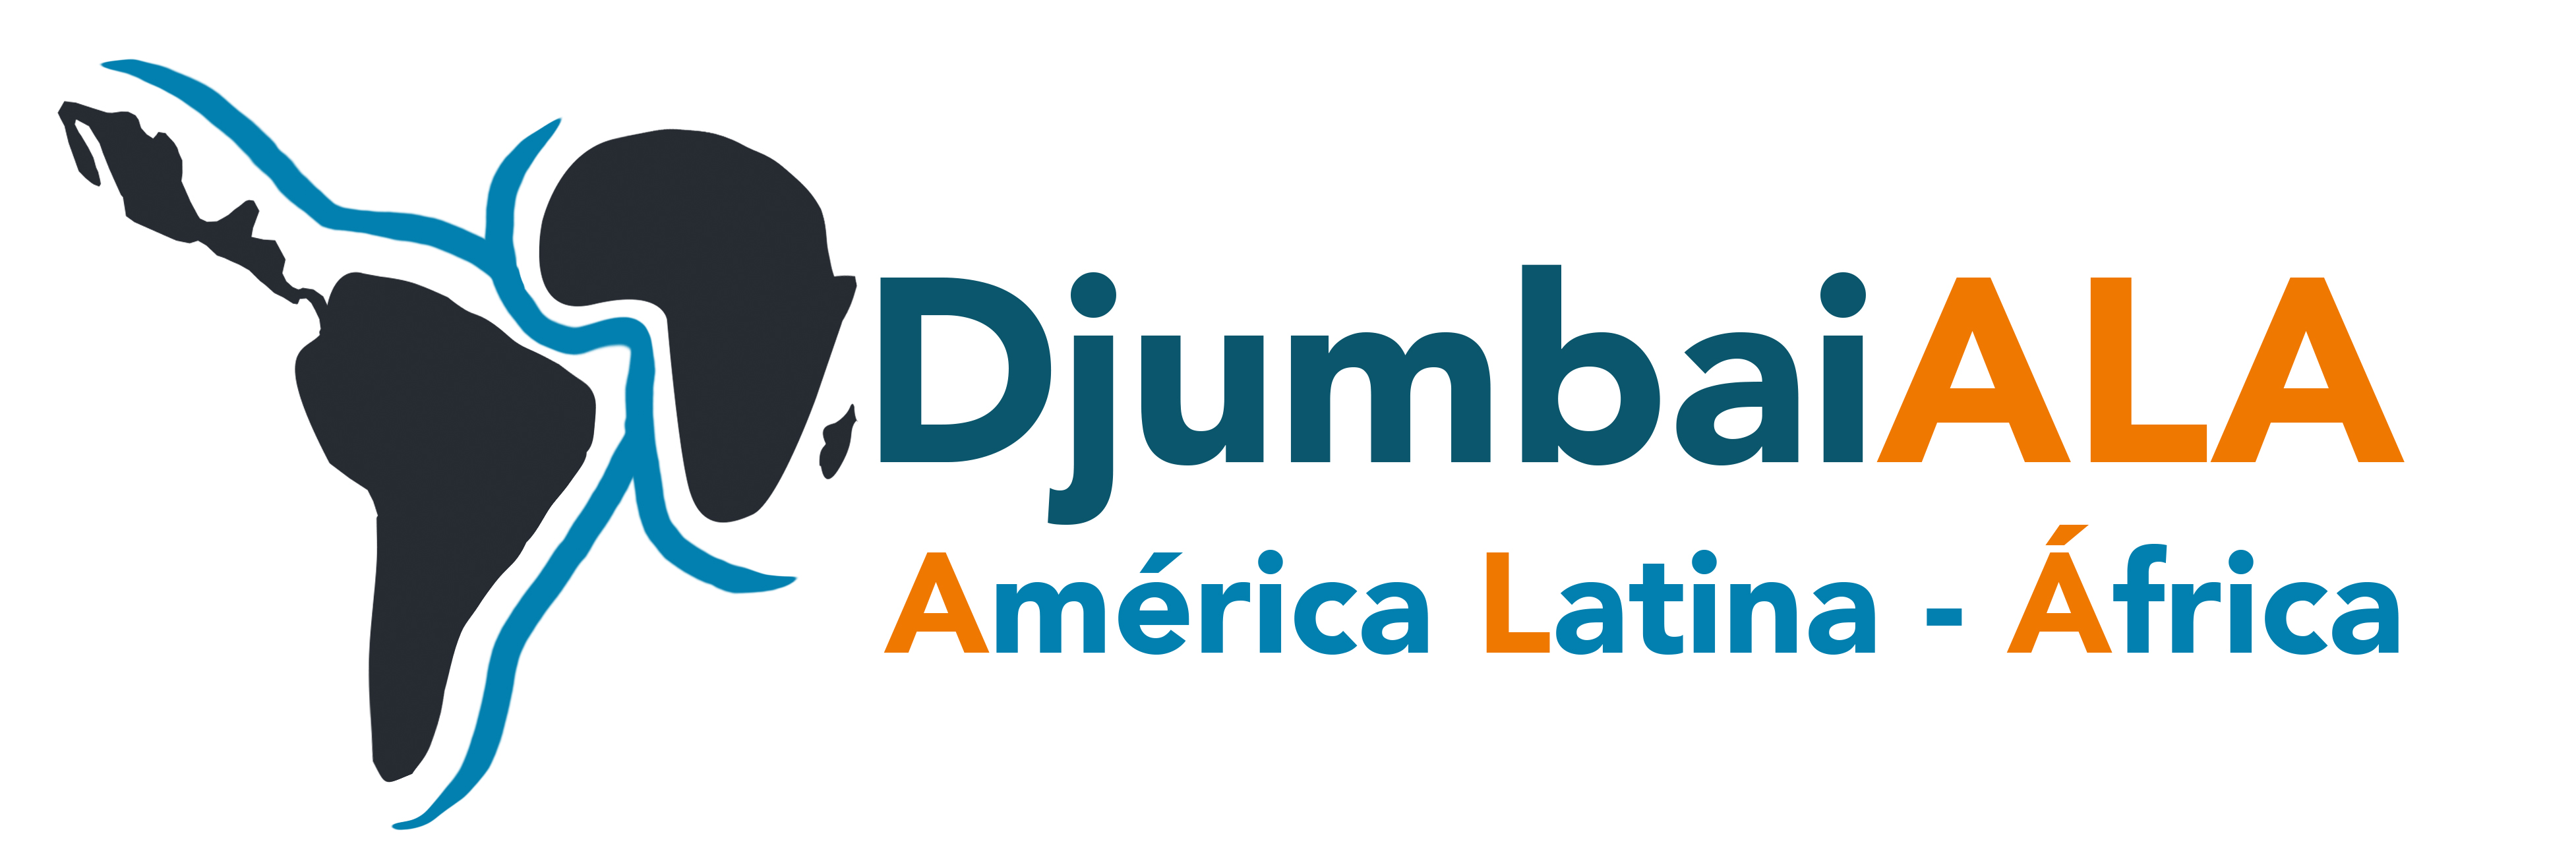 Djumbaiala Logo_FINAL